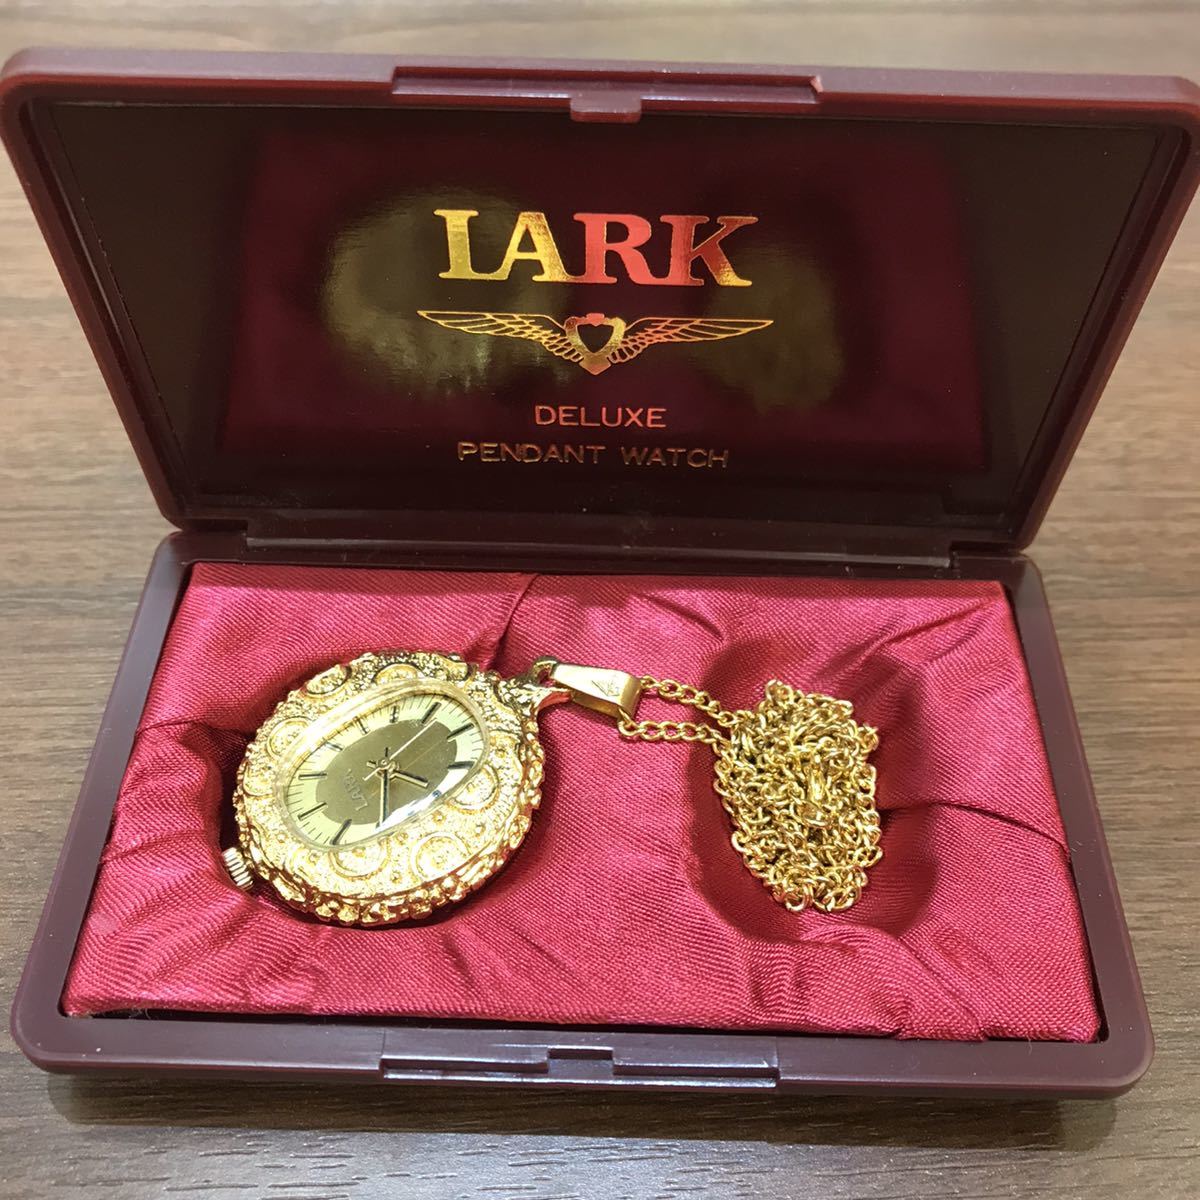 【LARK】懐中時計 動作確認済み ペンダント ウォッチ ネックレス 約67cm 箱付き ゴールドカラー DELUXE PENDANT WATCH コレクションの画像1